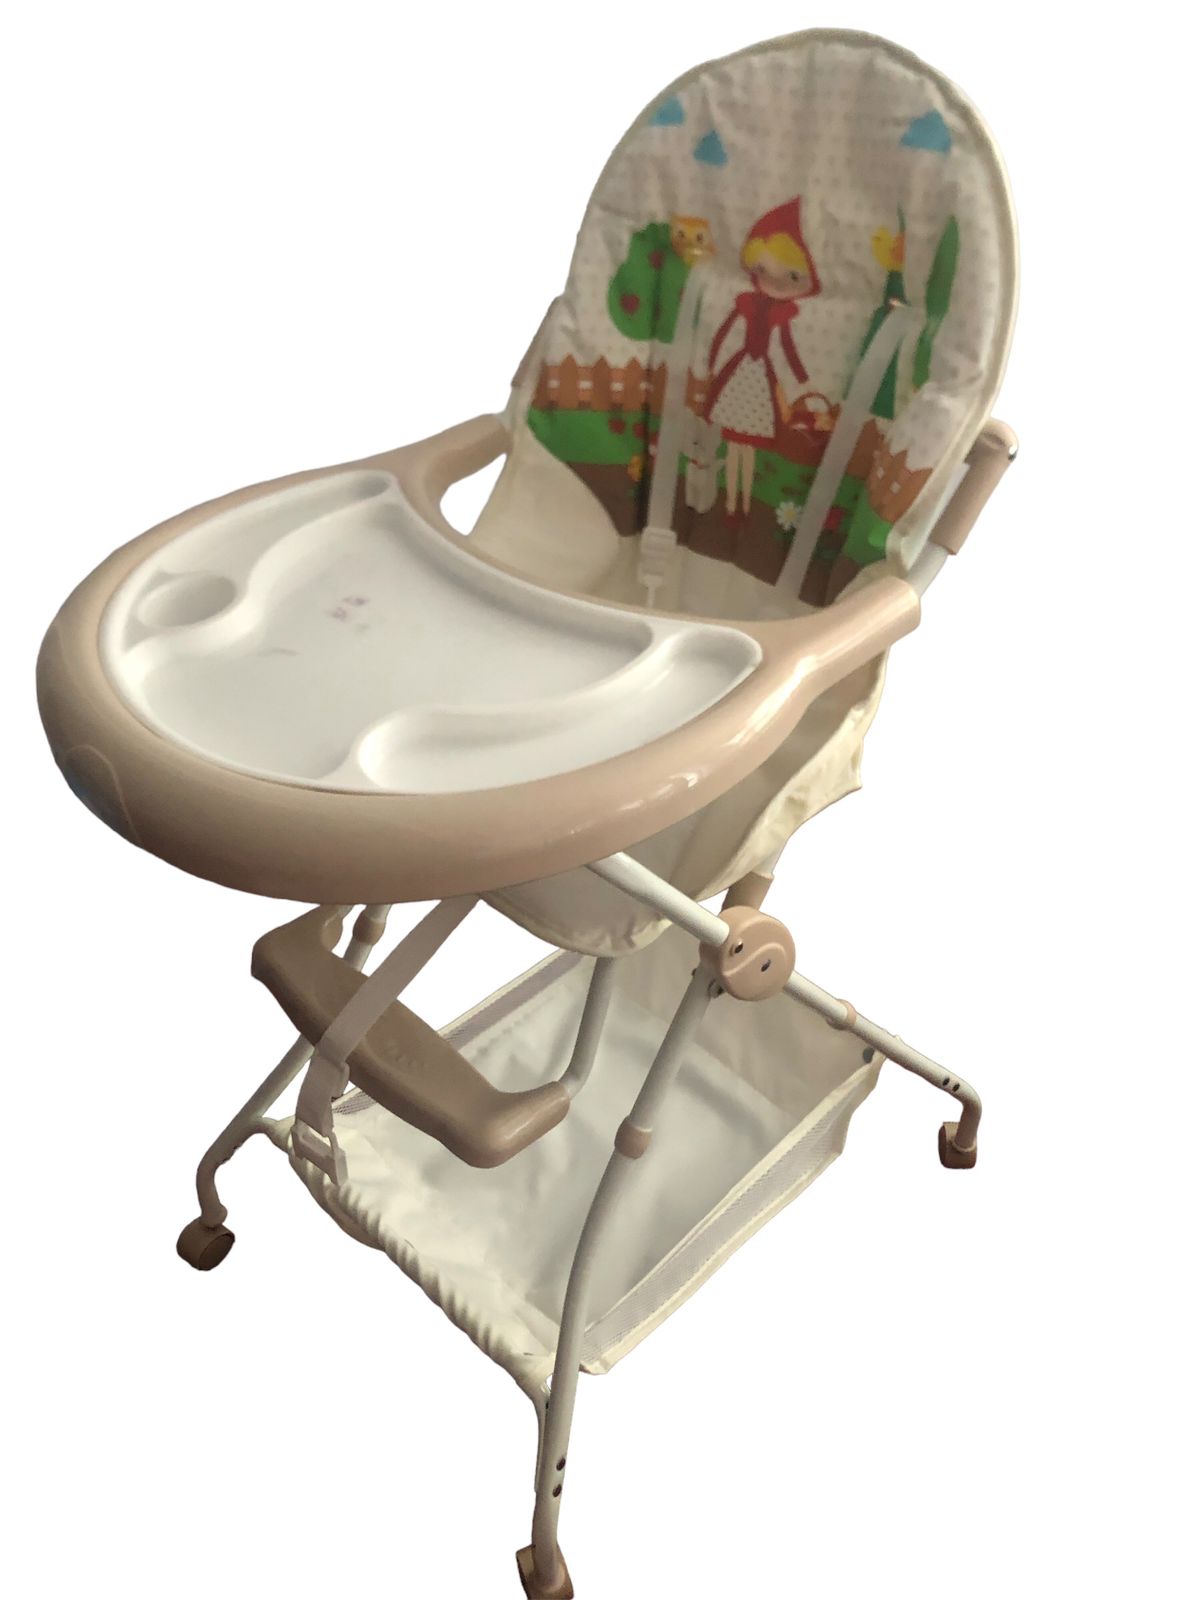 Baby high chair / feeding chair